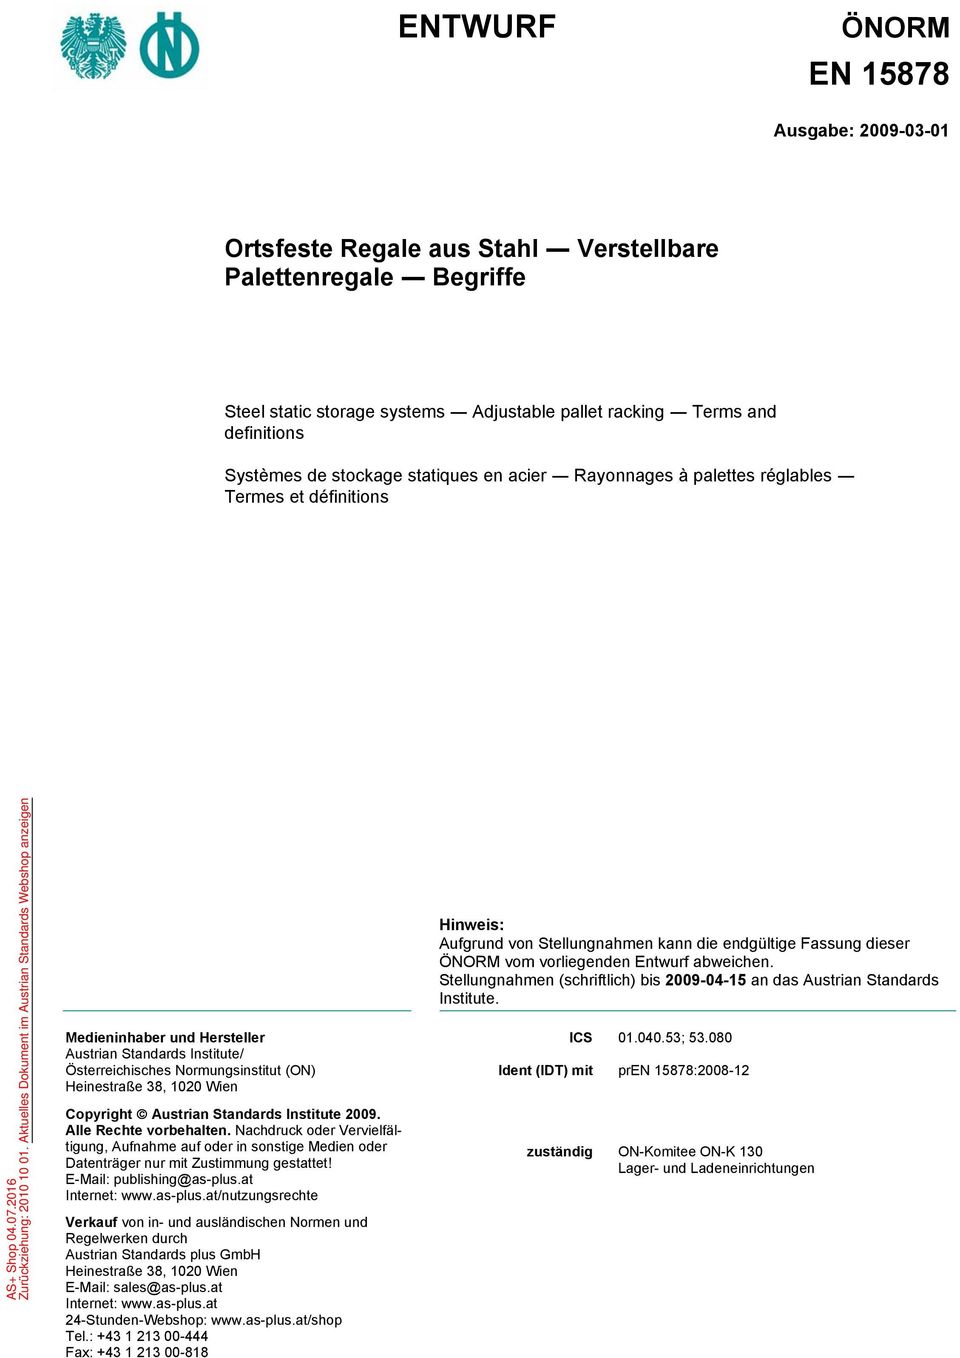 1020 Wien Copyright Austrian Standards Institute 2009. Alle Rechte vorbehalten. Nachdruck oder Vervielfältigung, Aufnahme auf oder in sonstige Medien oder Datenträger nur mit Zustimmung gestattet!